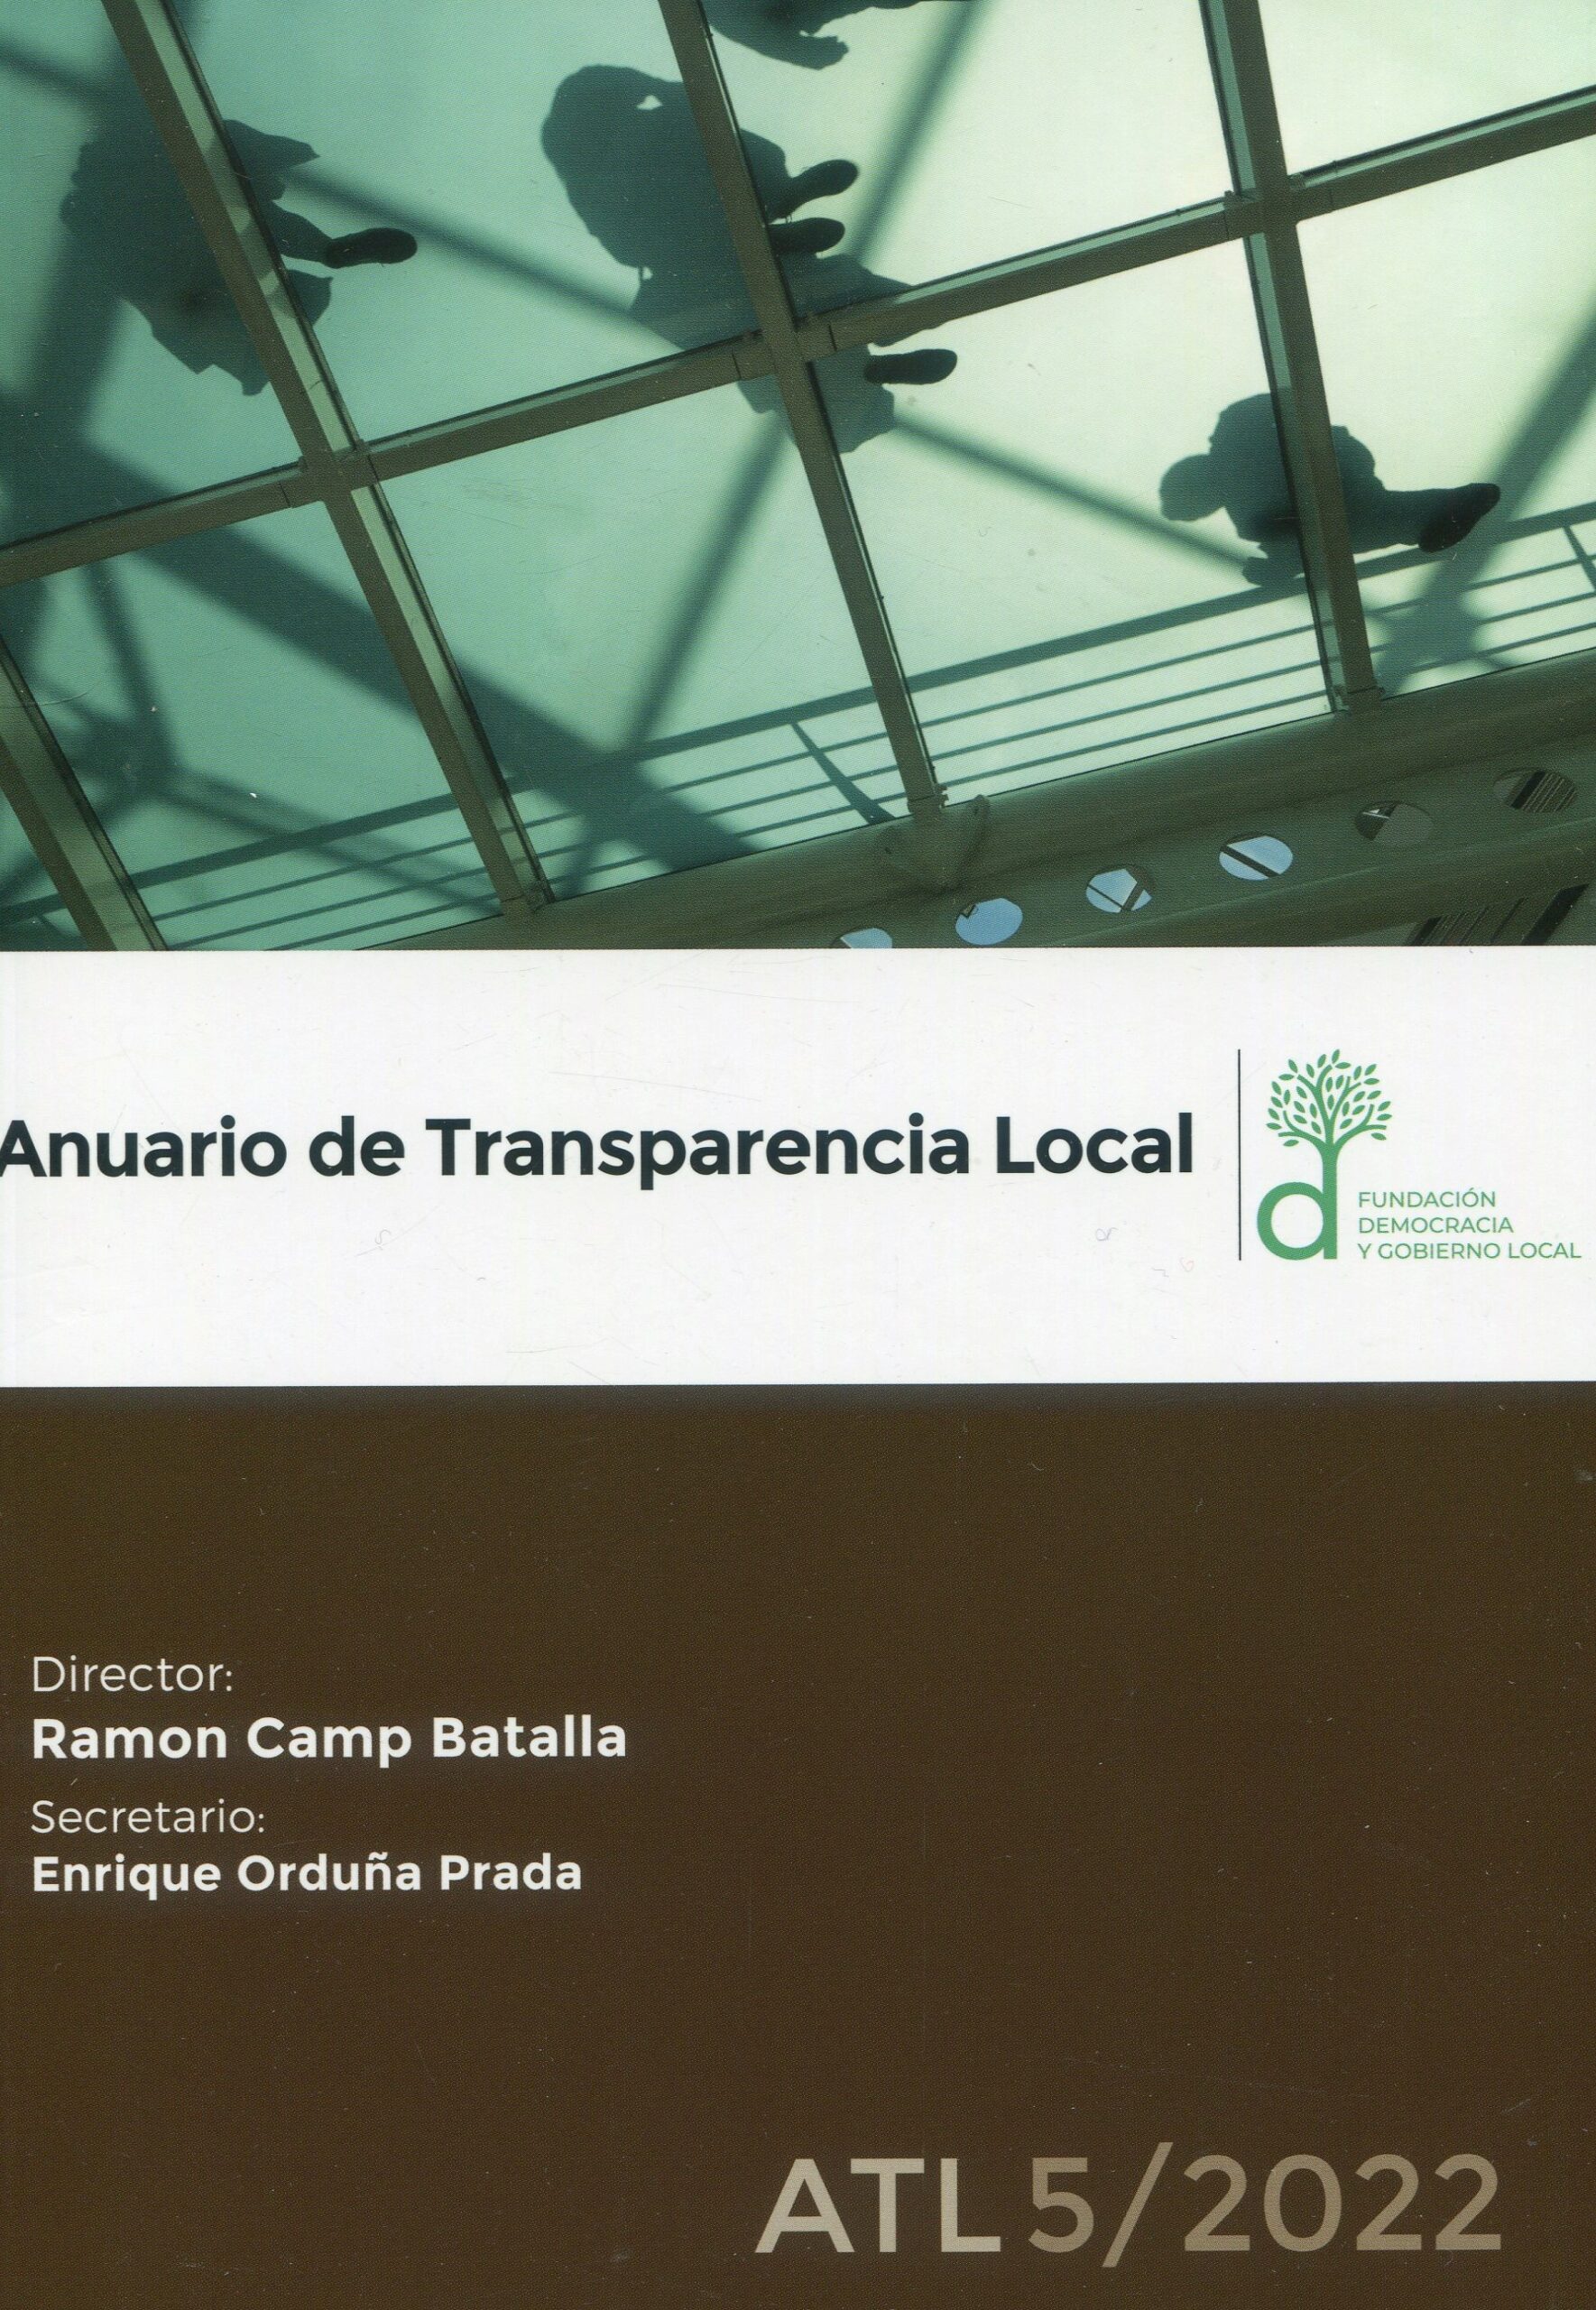 Anuario de Transparencia Local, Nº 5, año 2022